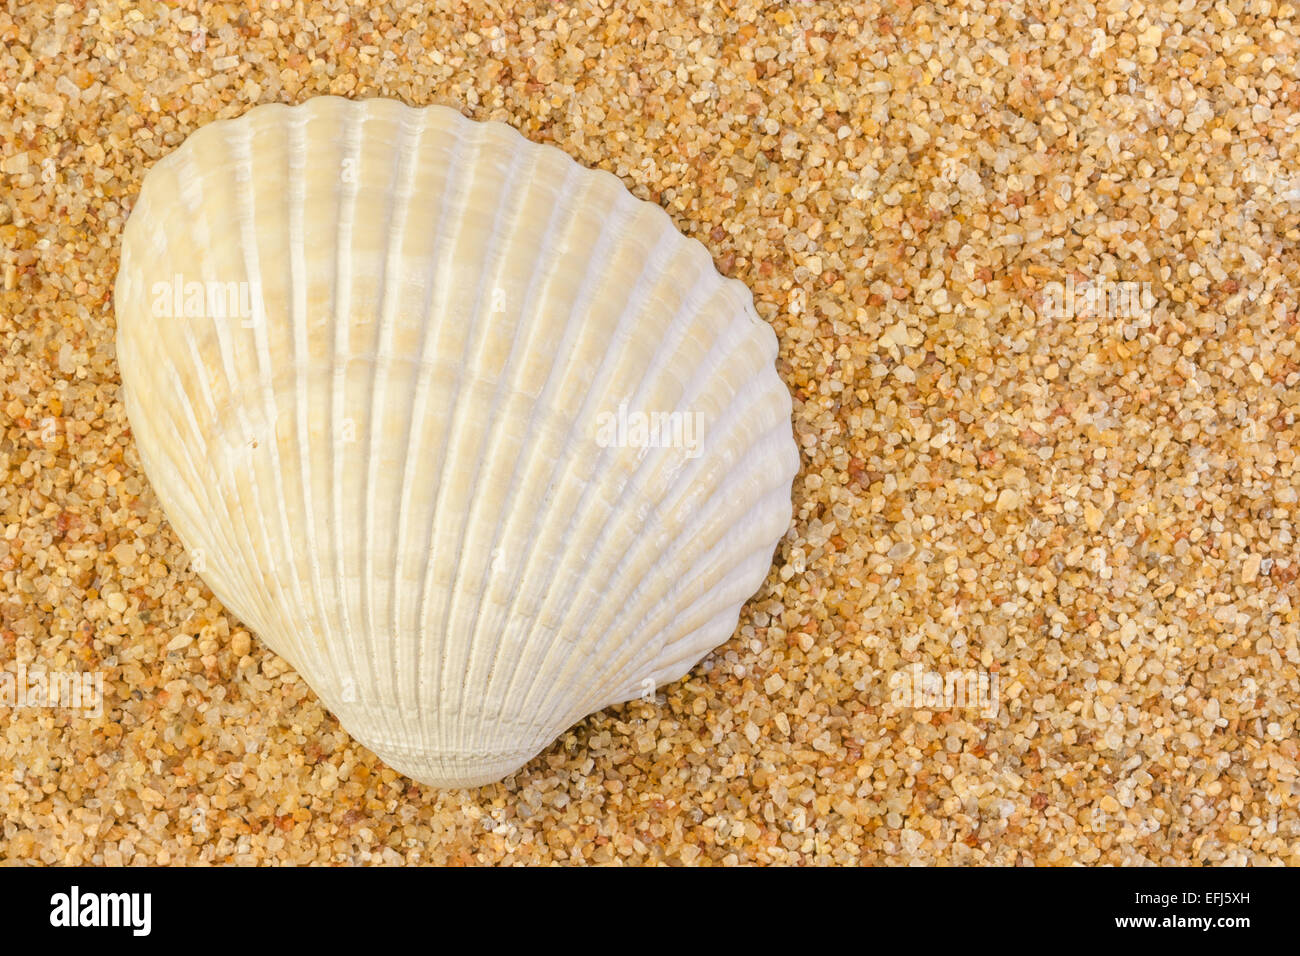 Nahaufnahme Bild einer Herzmuschel Schale liegend auf einem Bett aus grobem Sand und offenbart seine natürliche Muster. Stockfoto